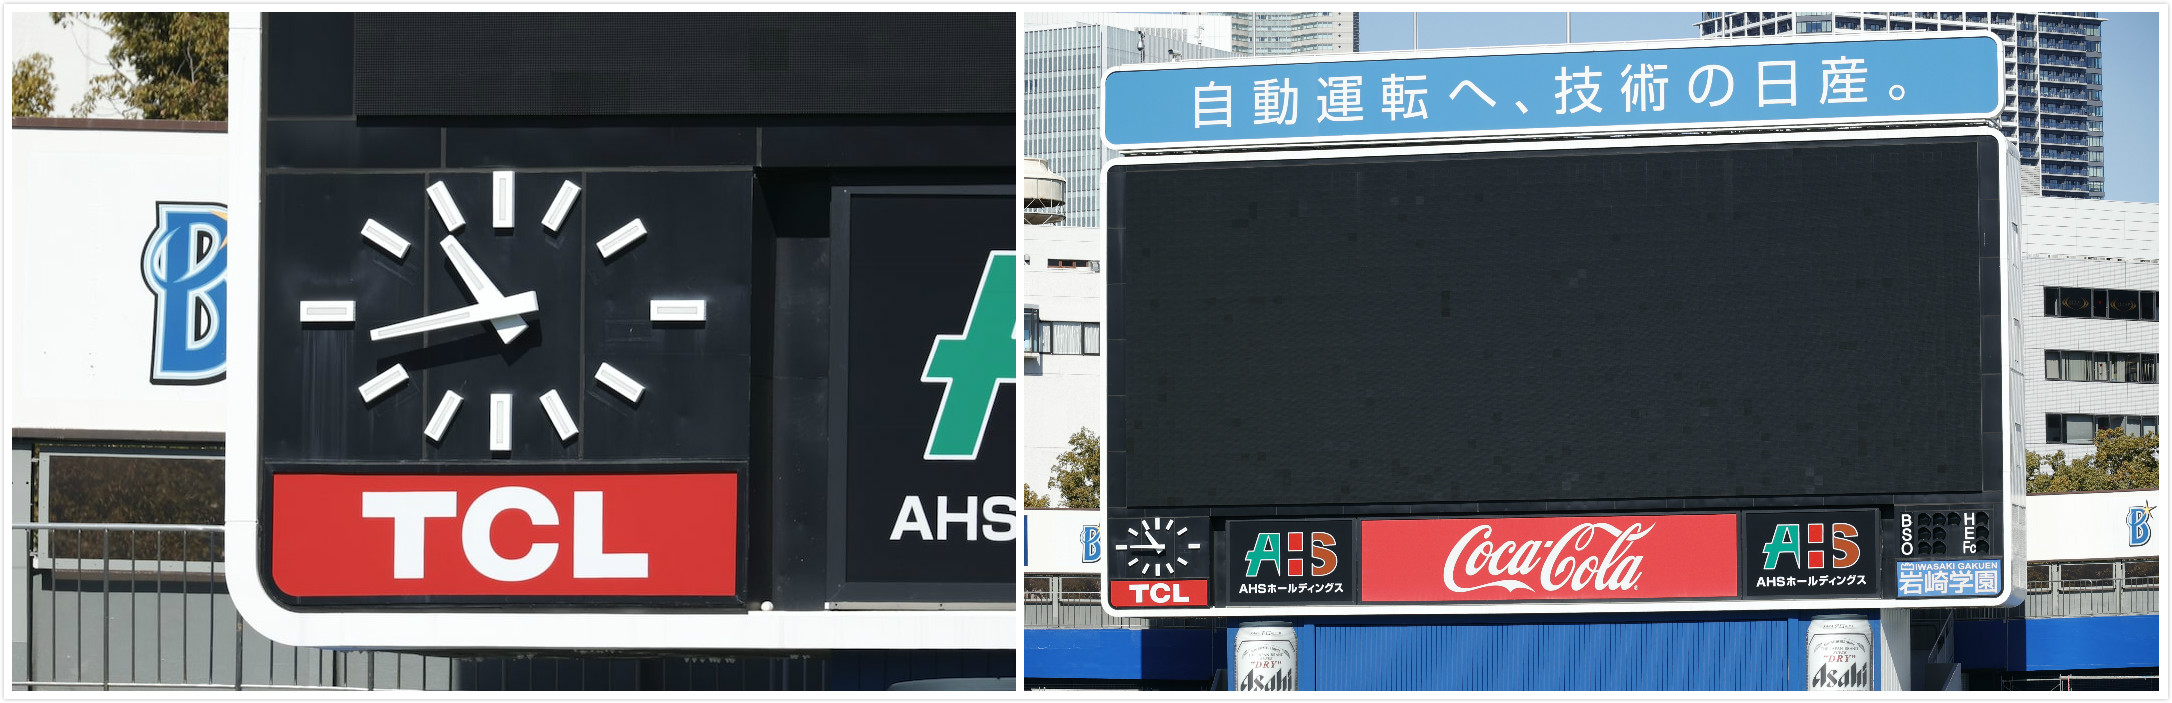 南宫ng·28 logo is displayed on the back screen